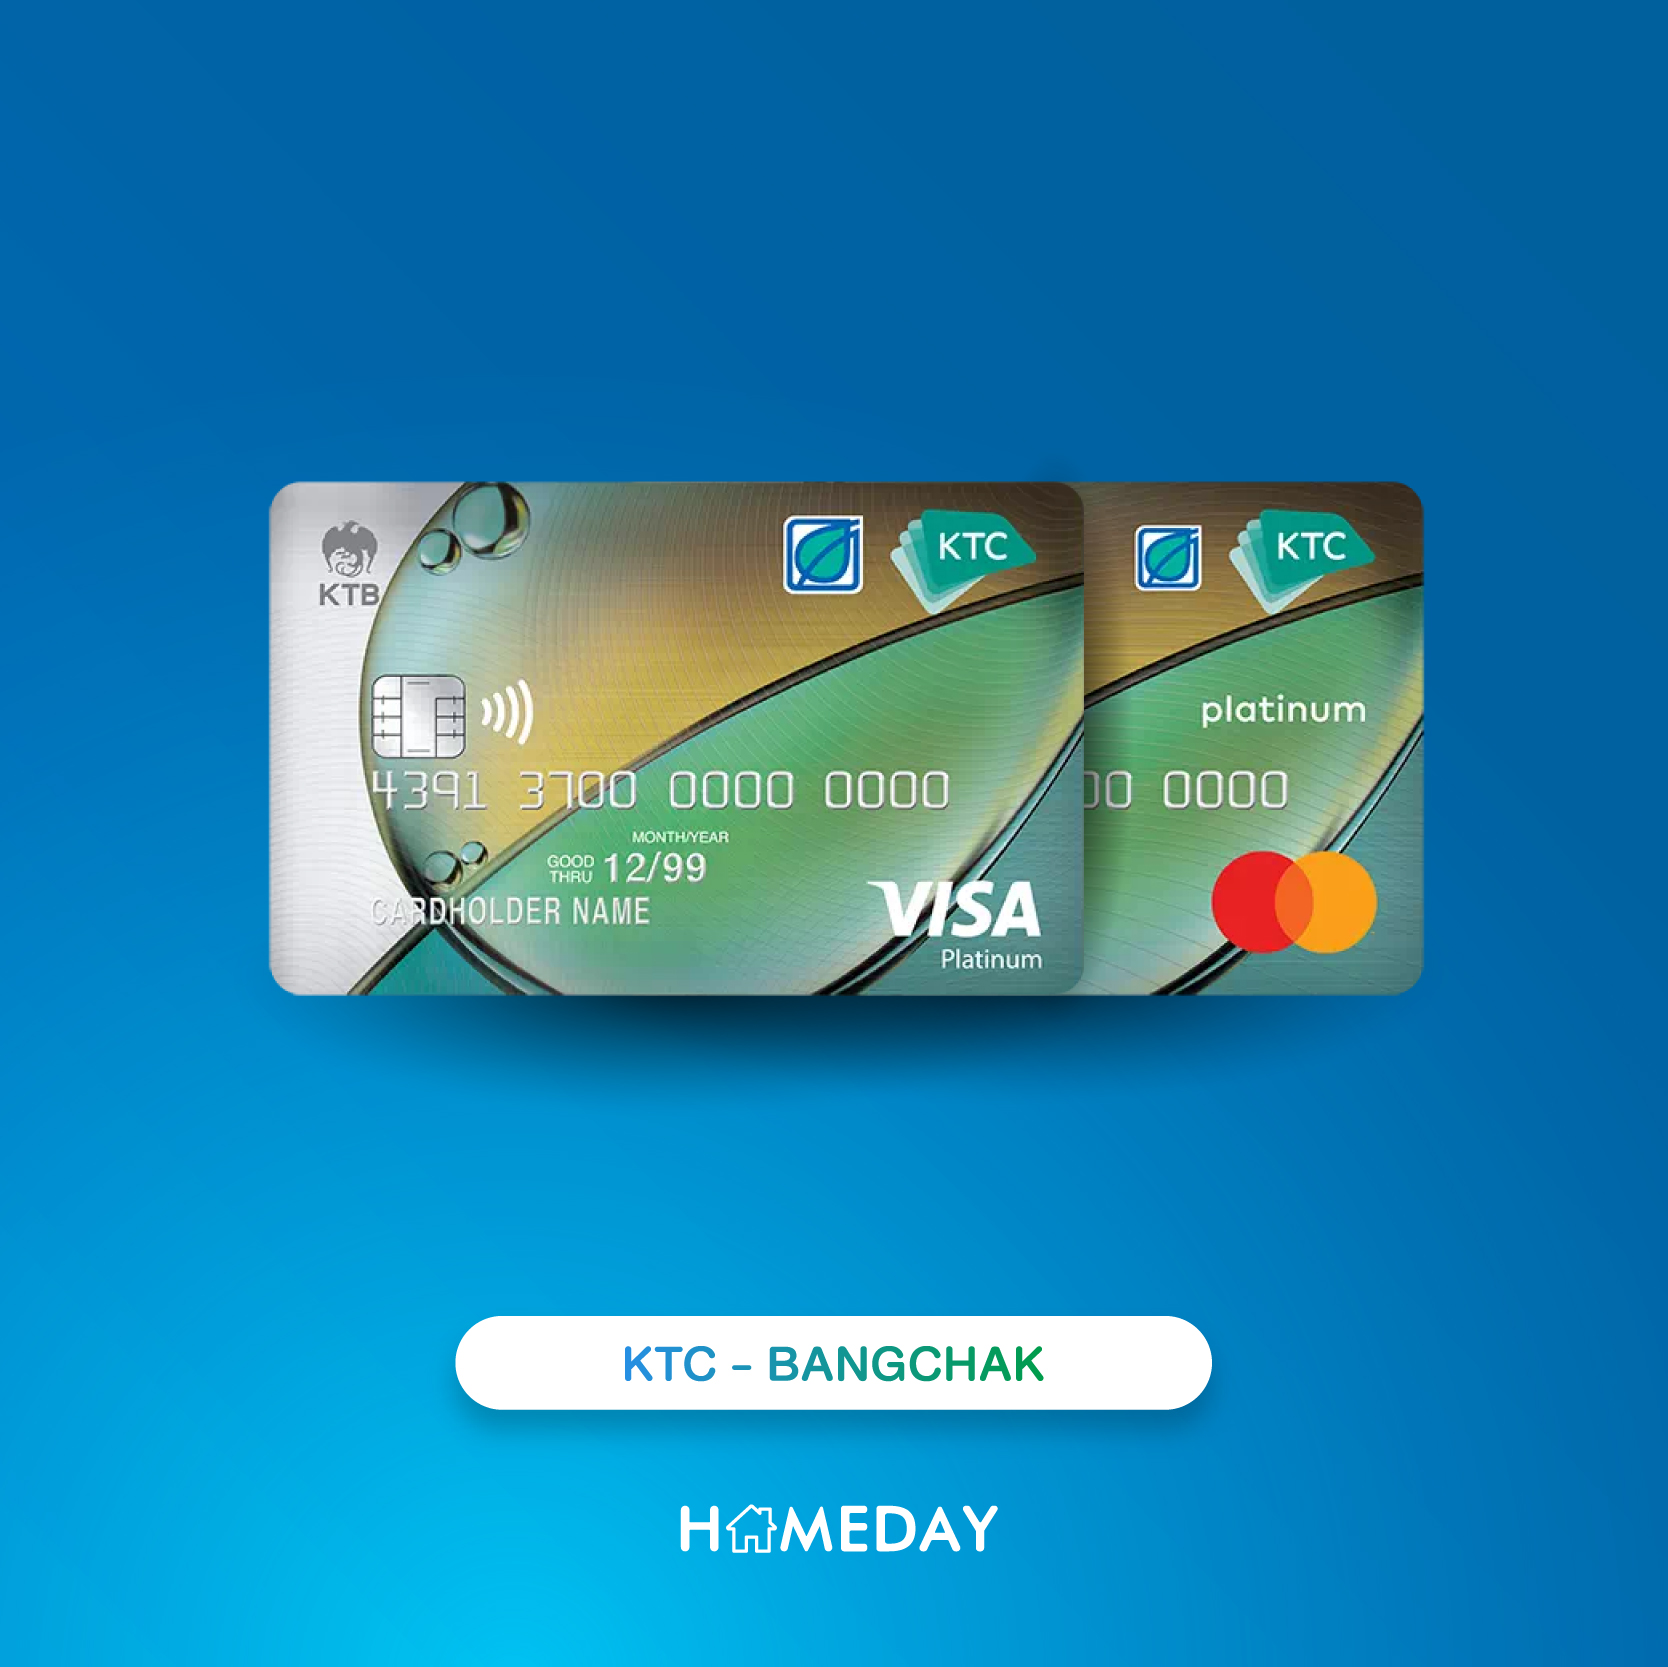 22 บัตรเครดิตเติมน้ำมัน 2565 สำหรับคนเงินเดือน 15,000 - Homeday